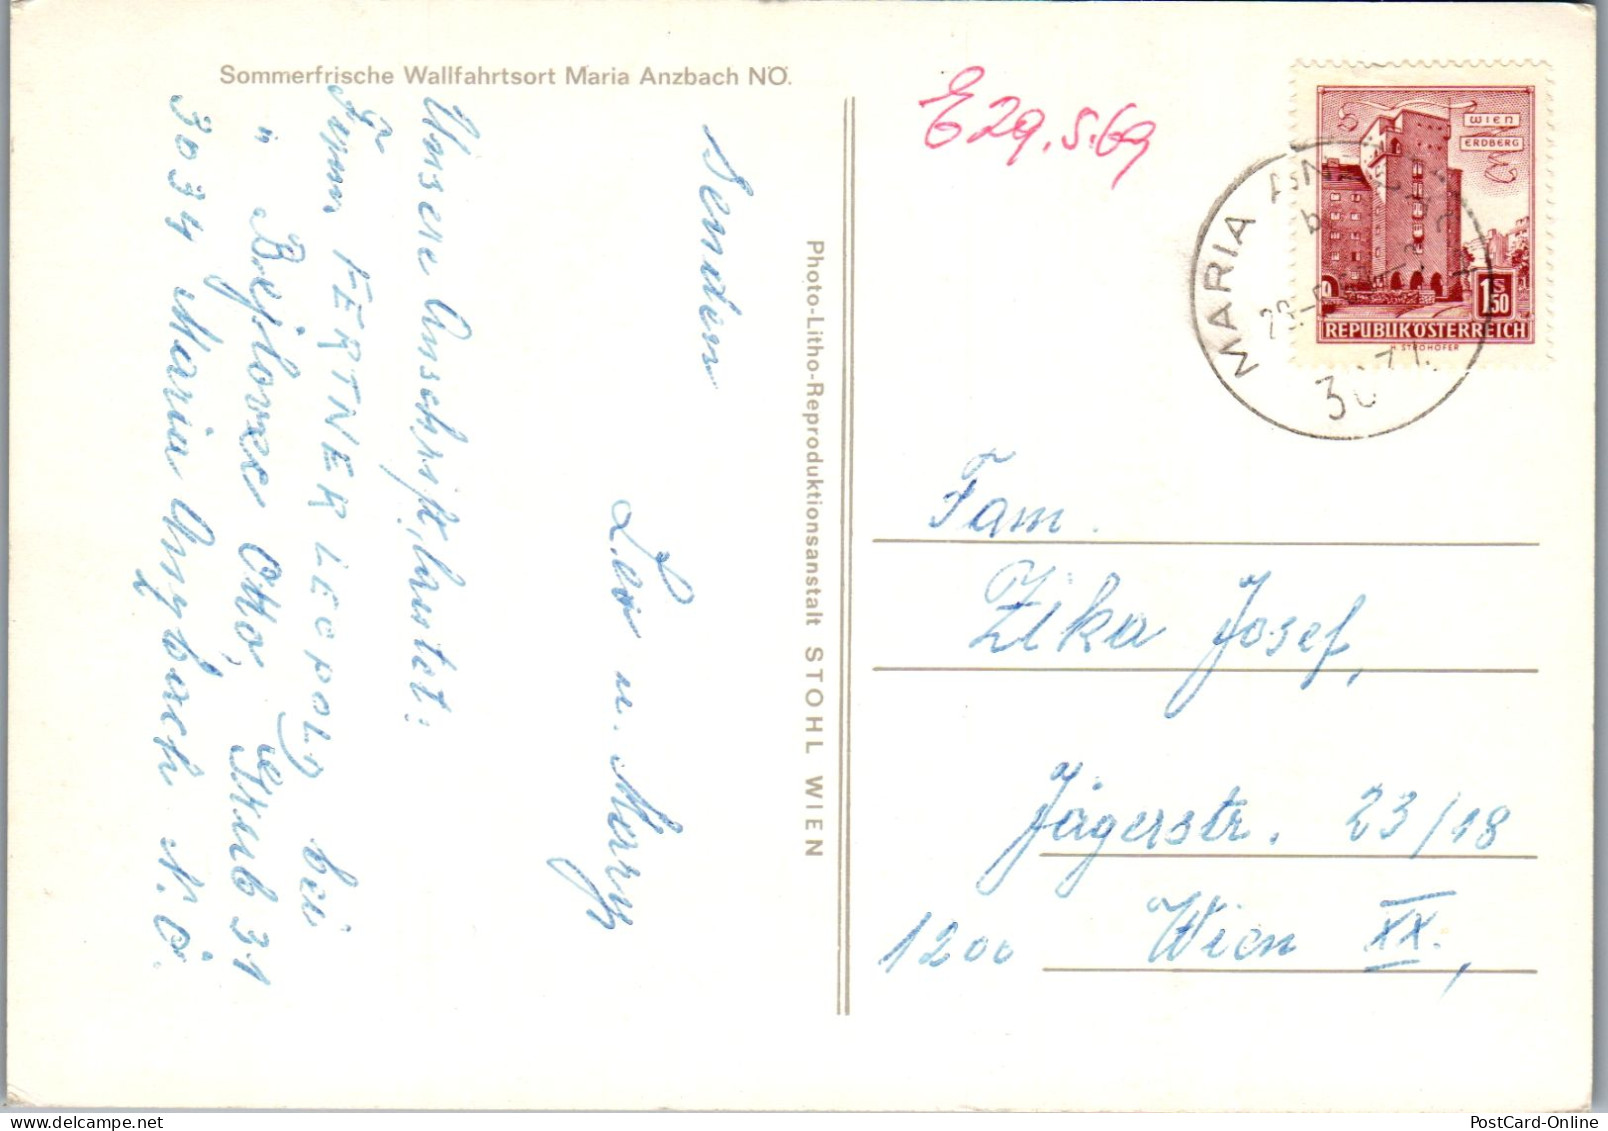 48034 - Niederösterreich - Maria Anzbach , Wallfahrtsort , Mehrbildkarte - Gelaufen 1969 - St. Pölten